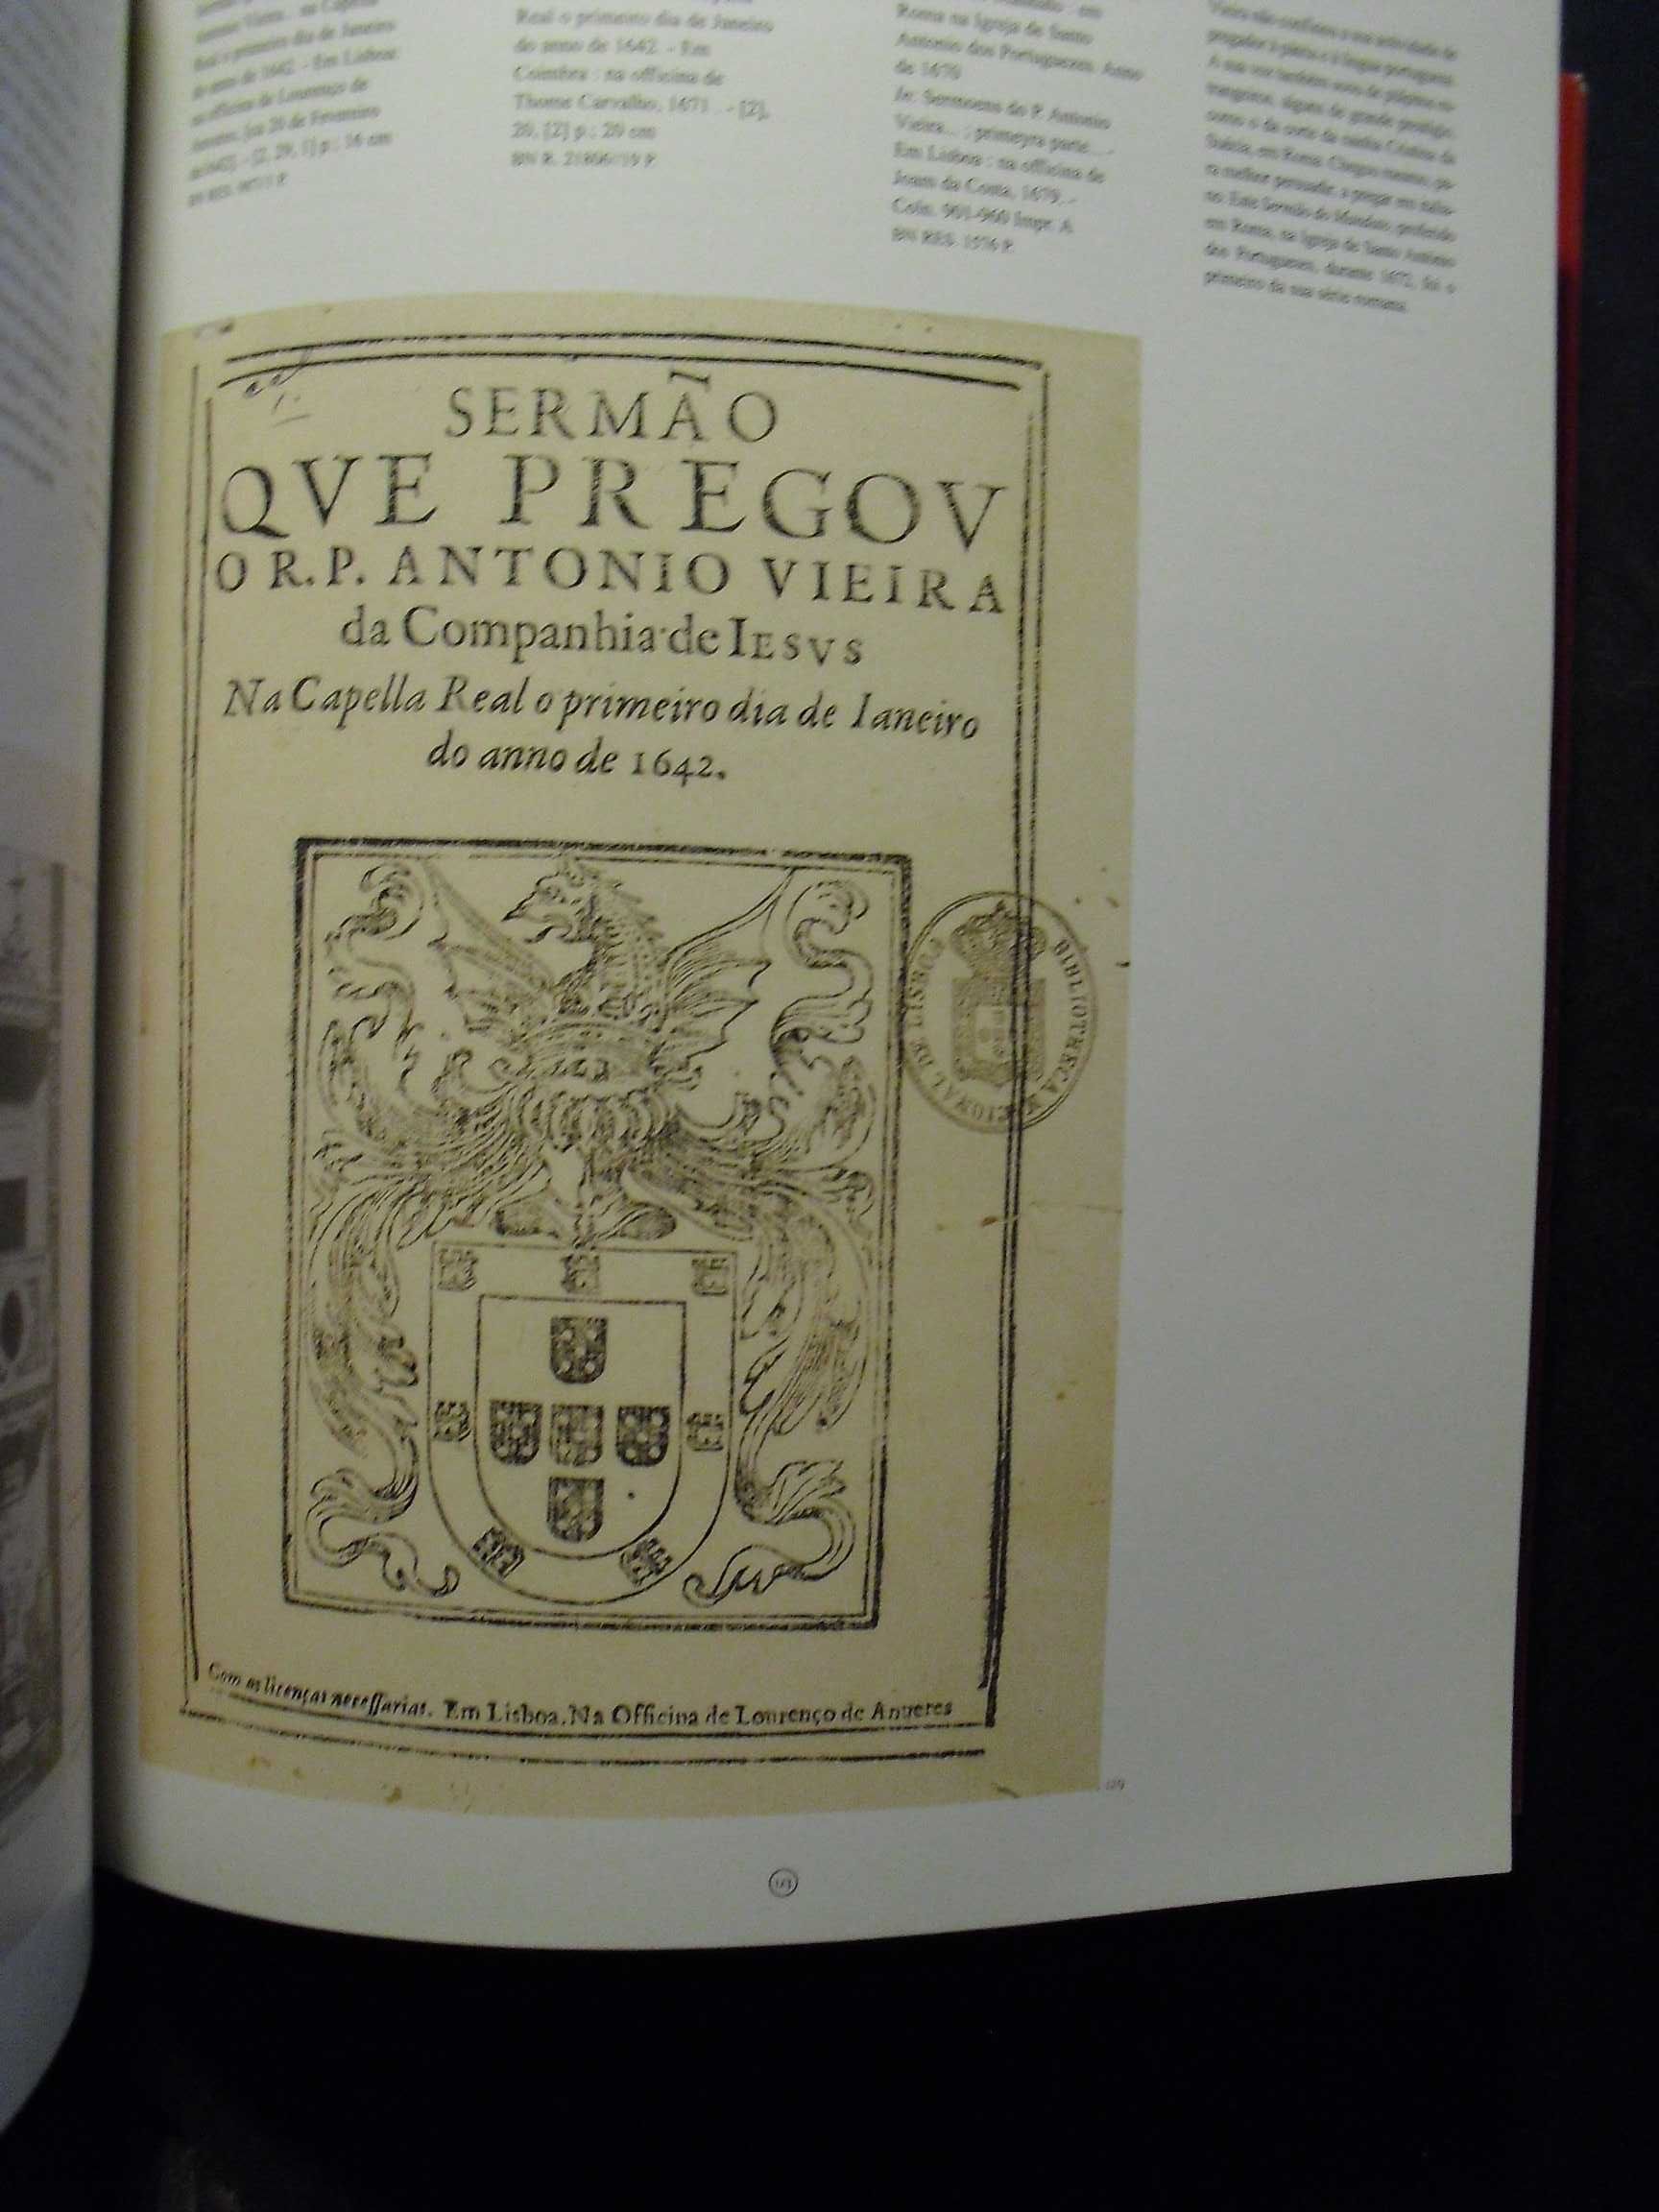 Exposição Padre António Vieira 1608/1697